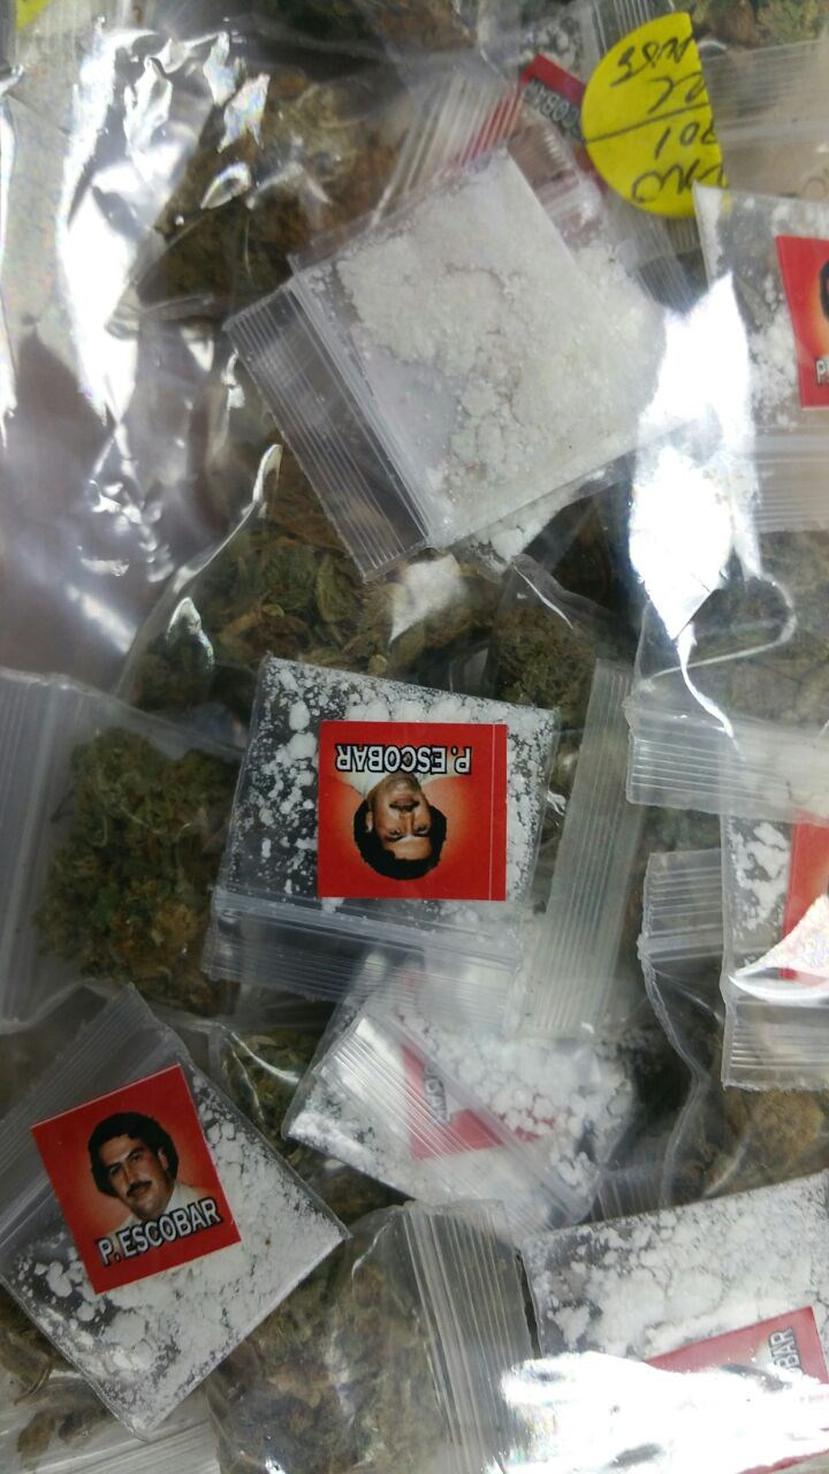 Se ocuparon 199 bolsitas de cocaína, 145 de marihuana, 7 decks de heroína y 8 cápsulas de crack, las cuales estaban marcadas con sellos con la imagen del fenecido capo colombiano Pablo Escobar. (Suministrada)